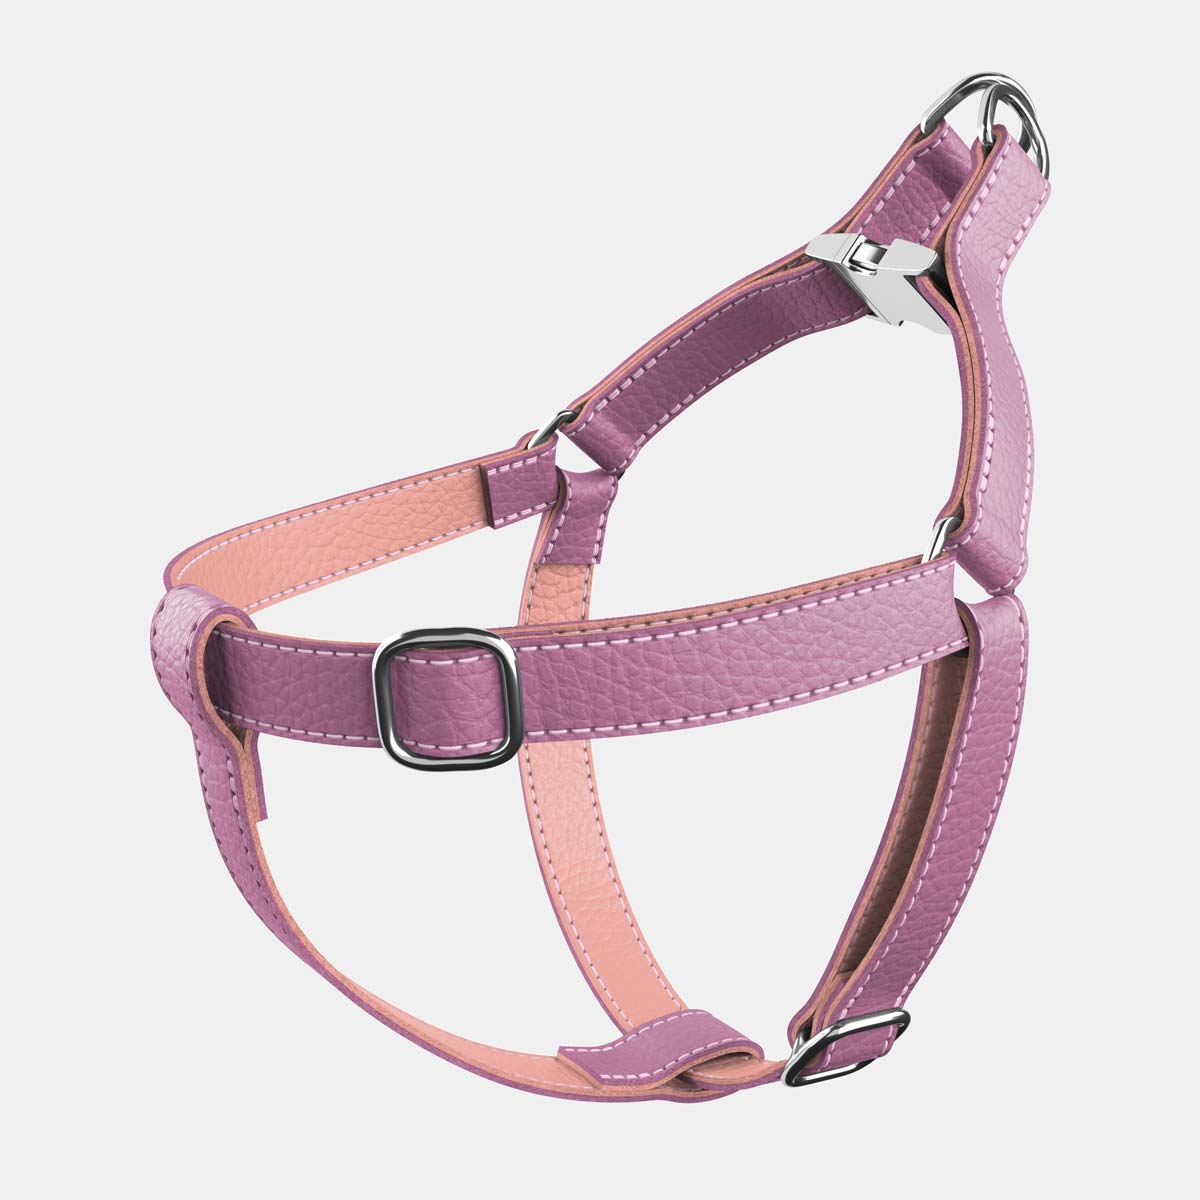 Leather Dog Poop Bag Holder - Pink - RYAN London